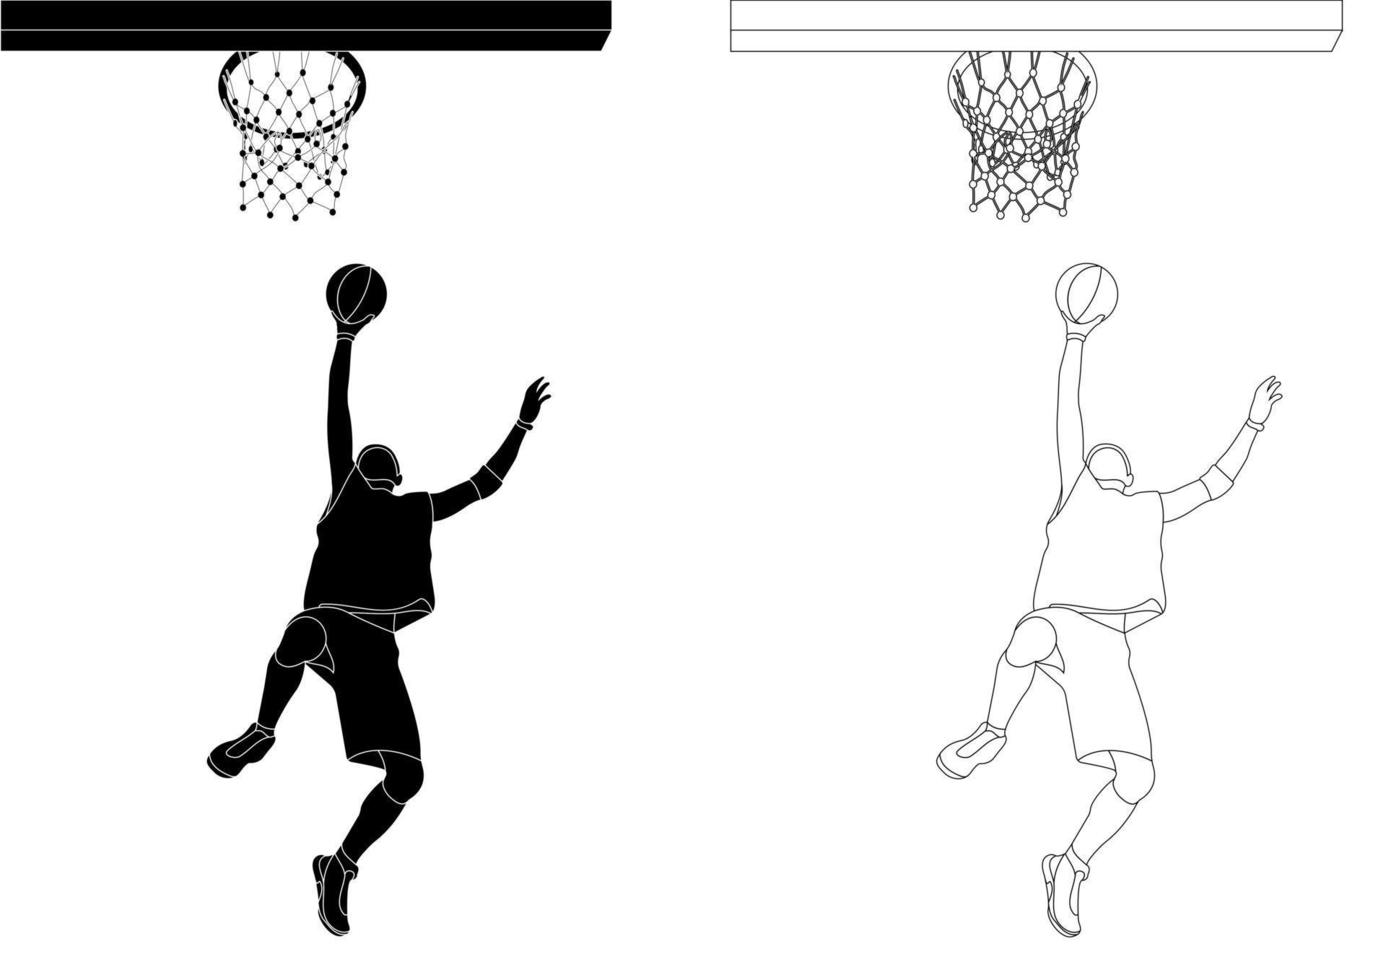 esbozar la silueta en blanco y negro de un atleta jugador de baloncesto en un juego de pelota. baloncesto. lanzamiento de anillo. vector